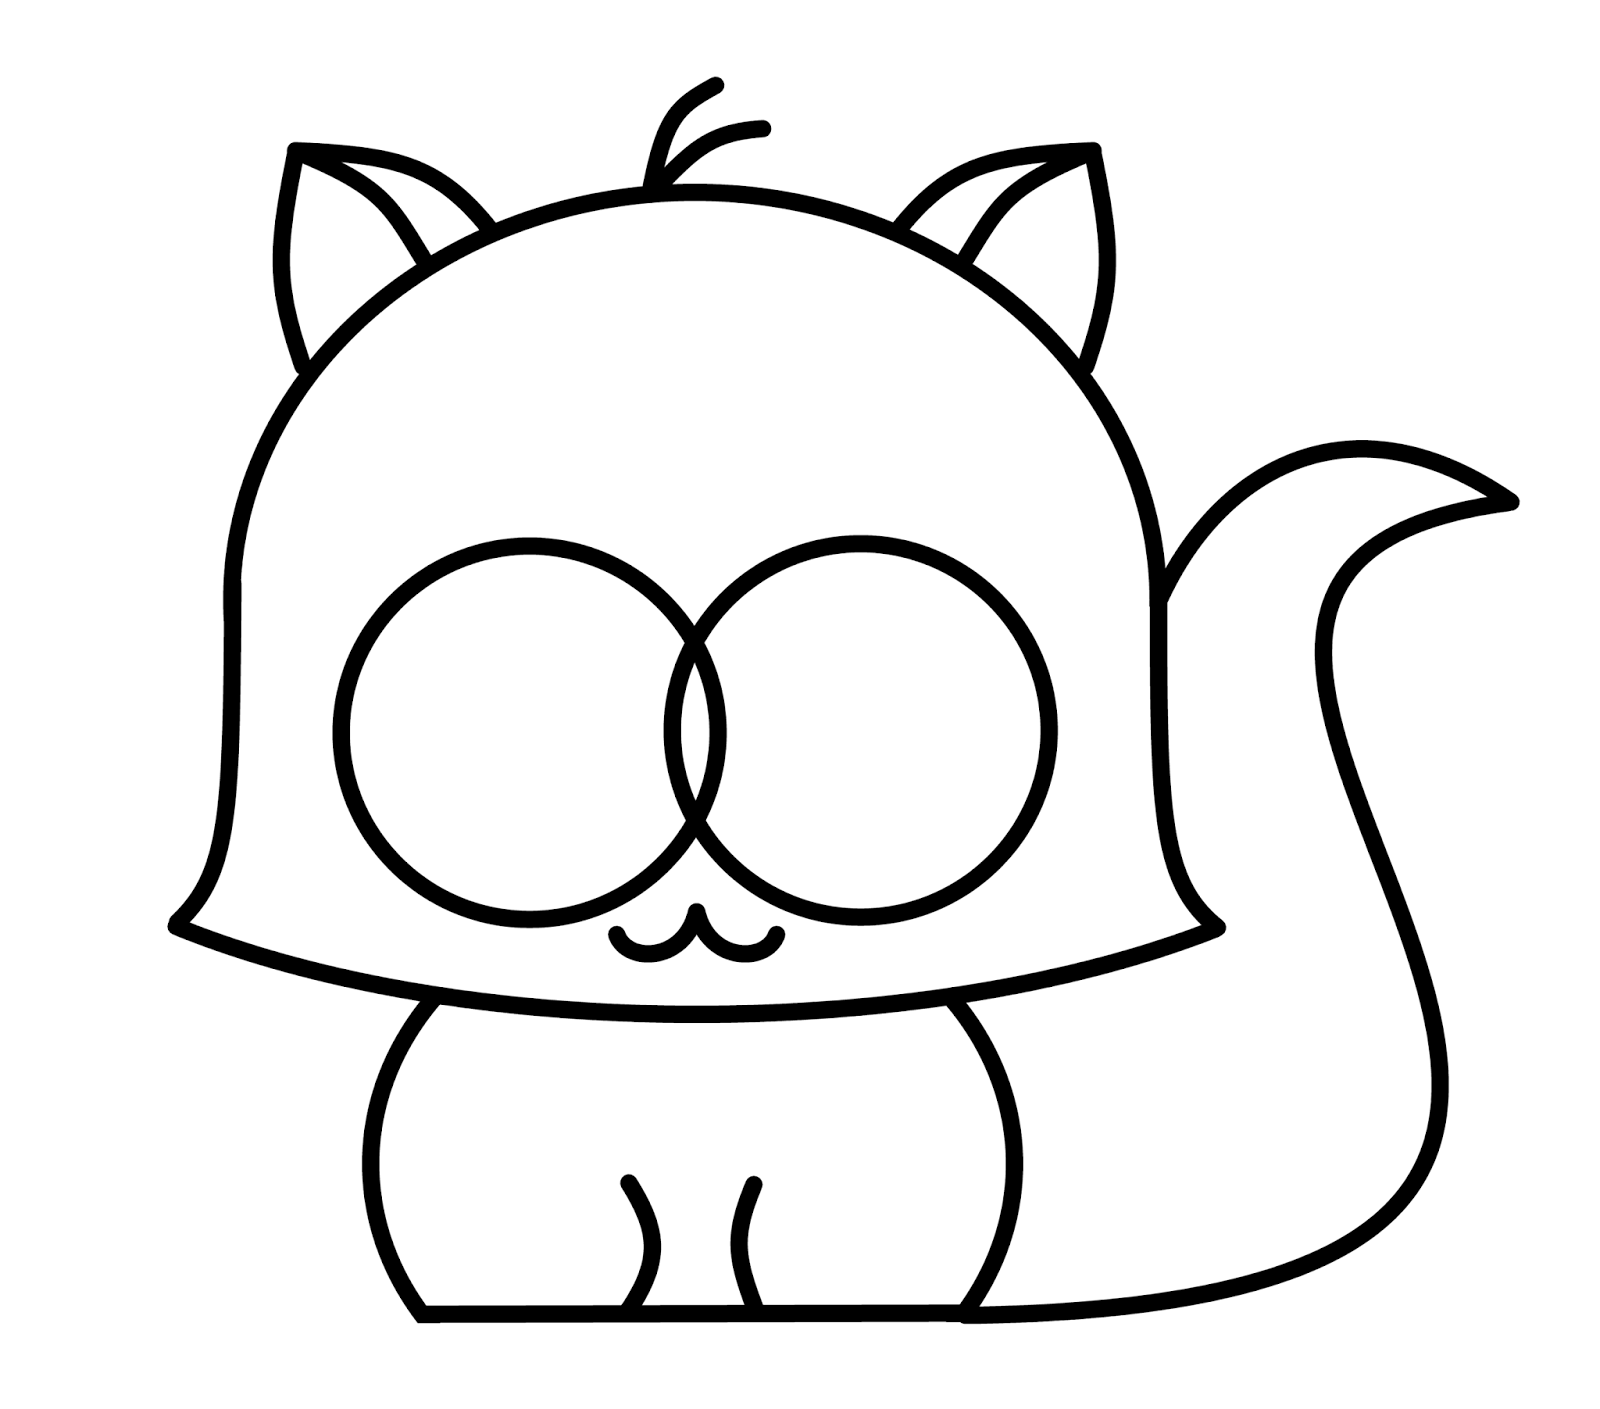 Cute N Kawaii: How To Draw A Kawaii Raccoon